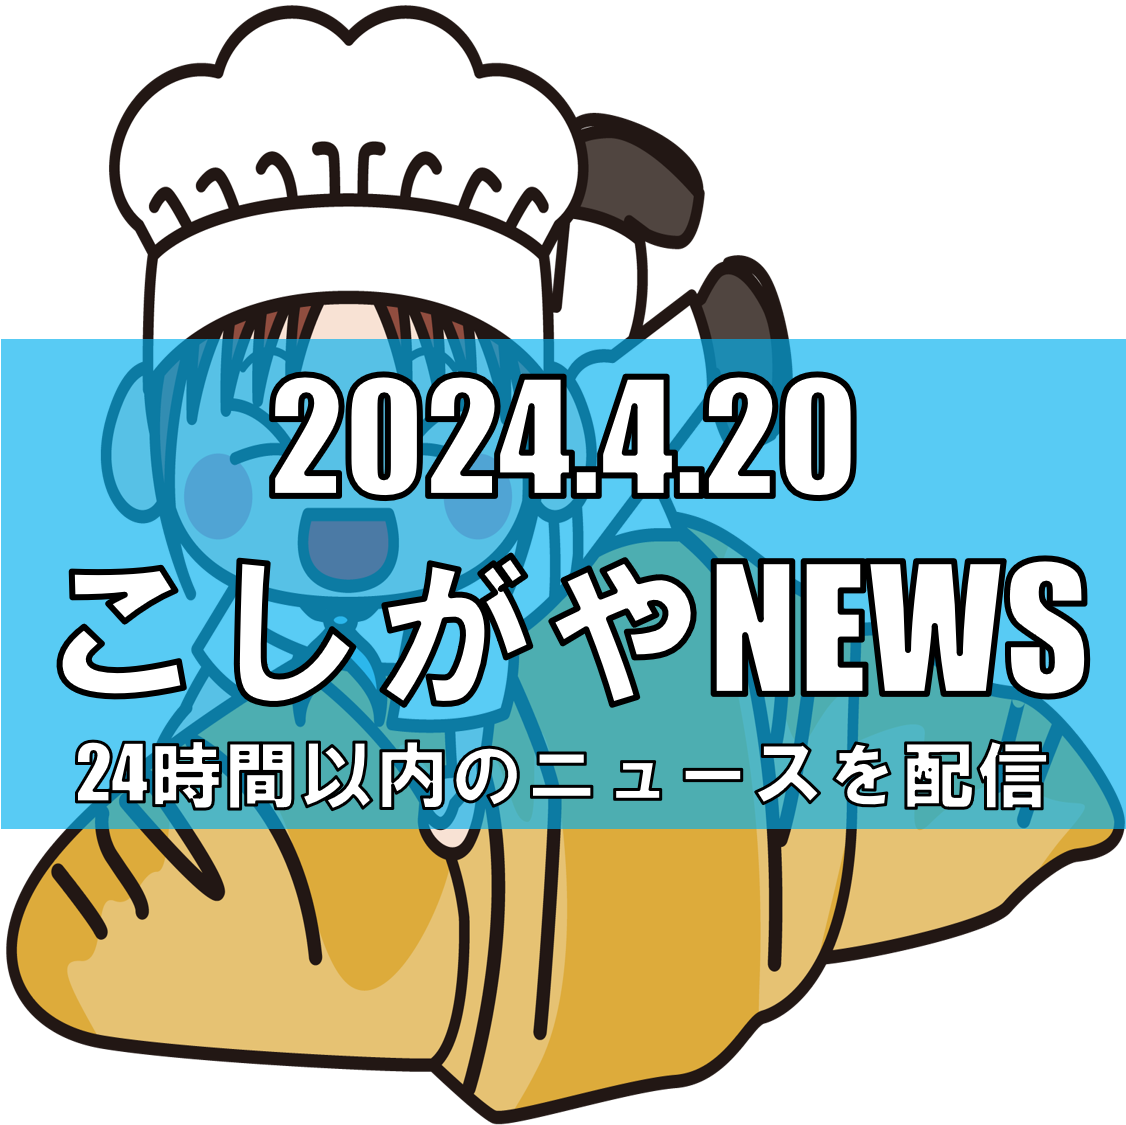 イオンレイクタウンが「パンEXPO 2024」で新たな味覚の旅を提供【越谷ニュー...